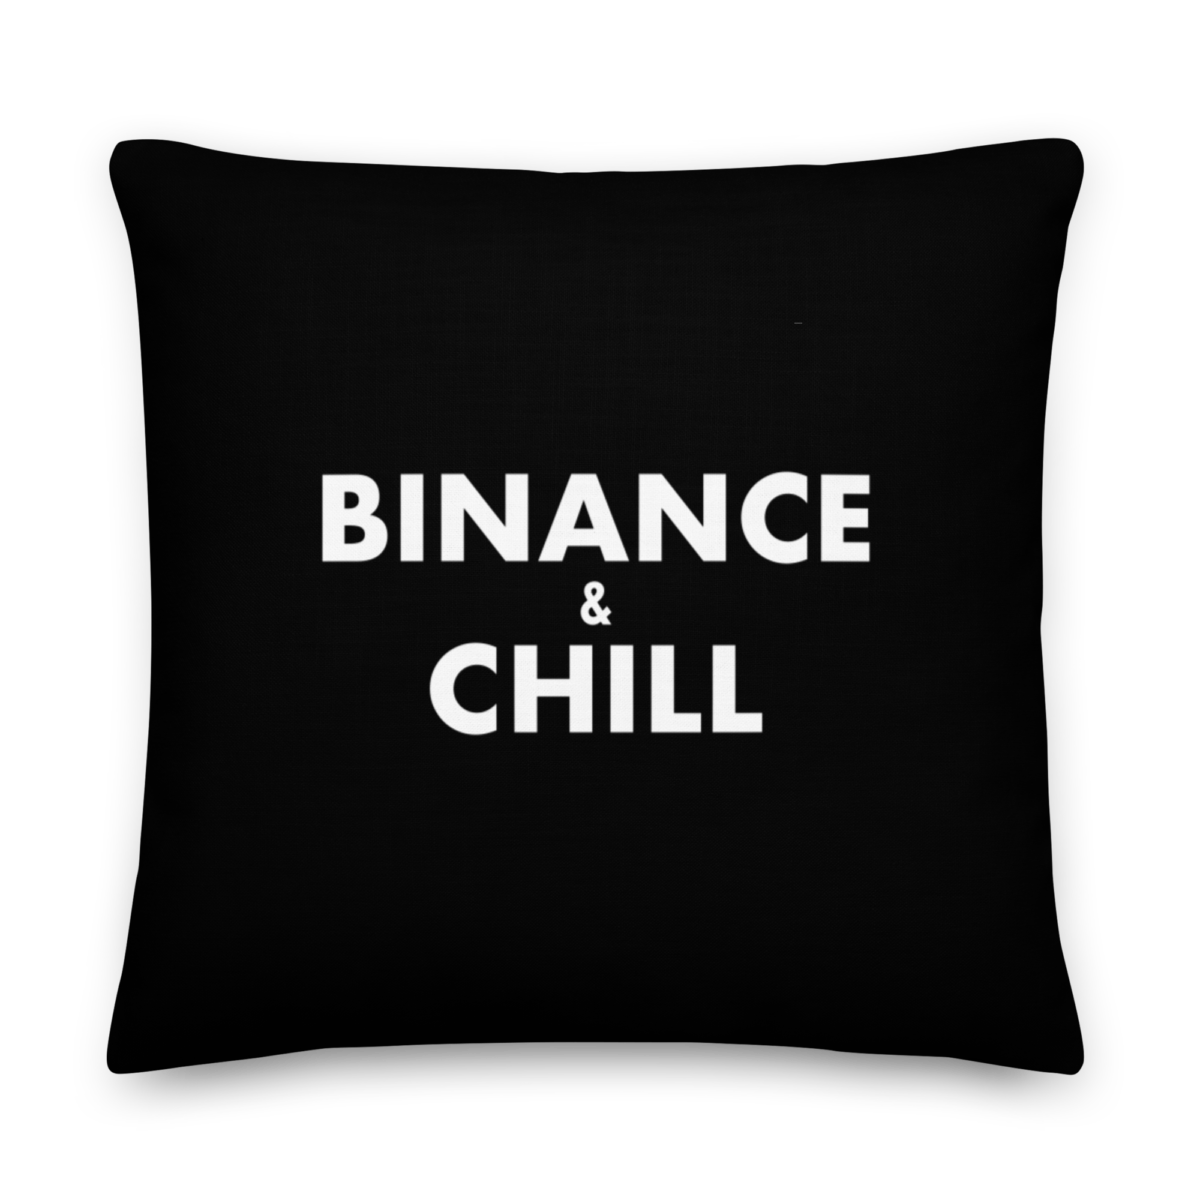 Binance & Chill Premium Pillow